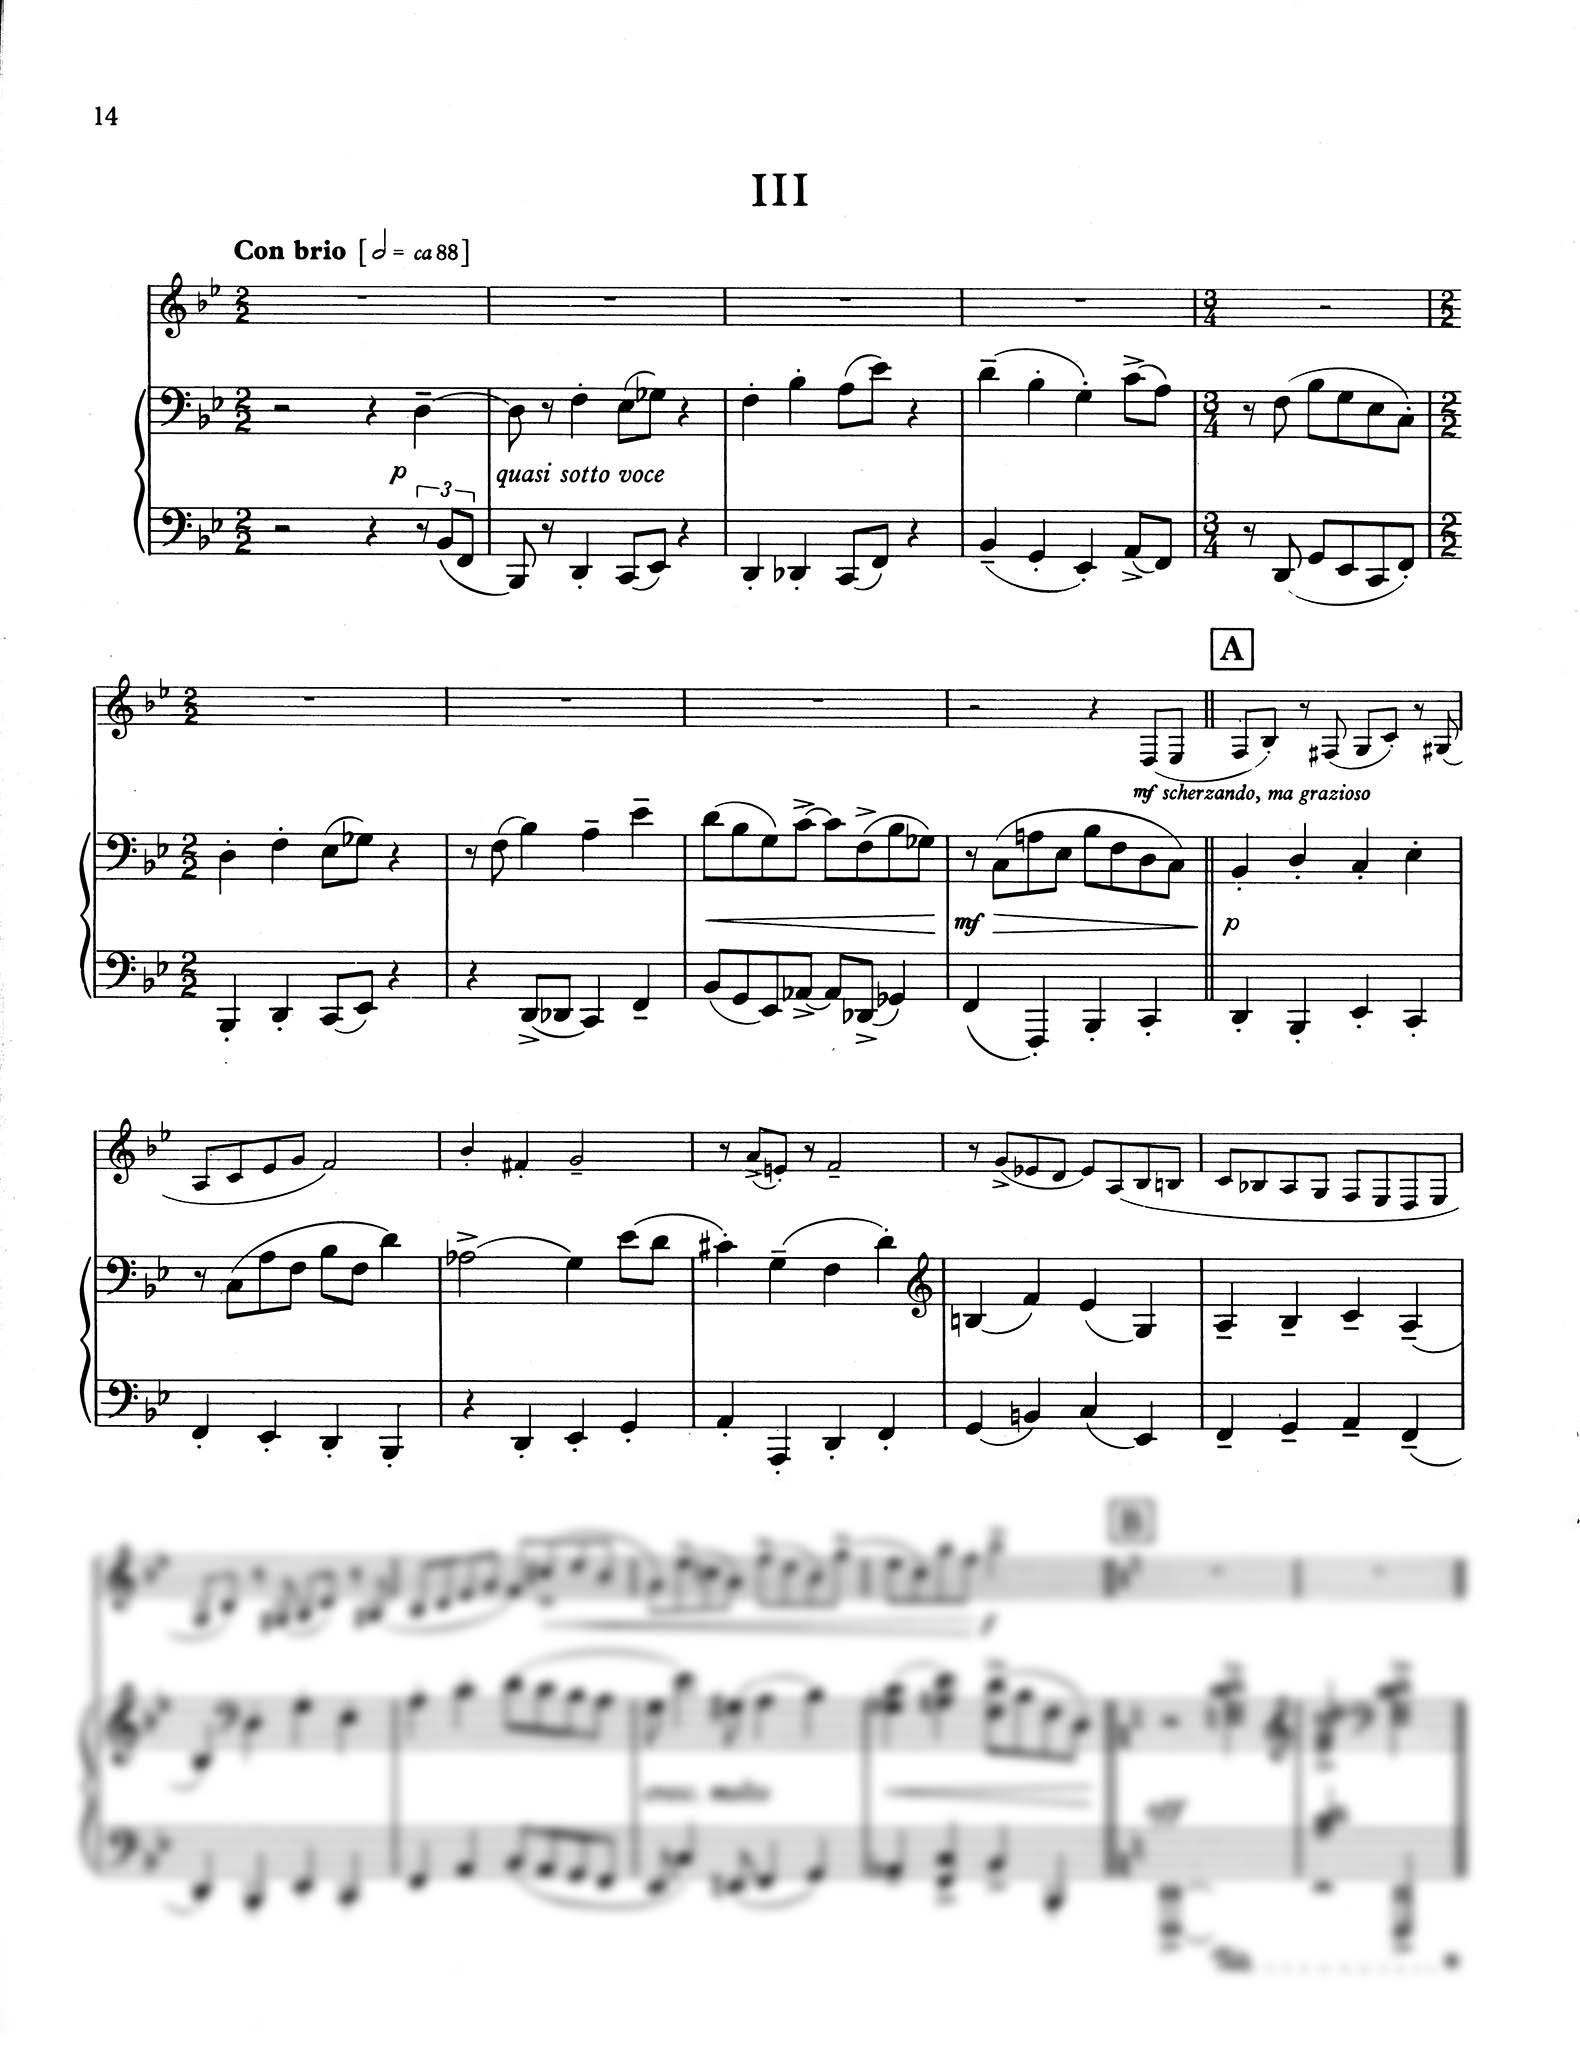 Sonatina for Clarinet & Piano - Movement 3